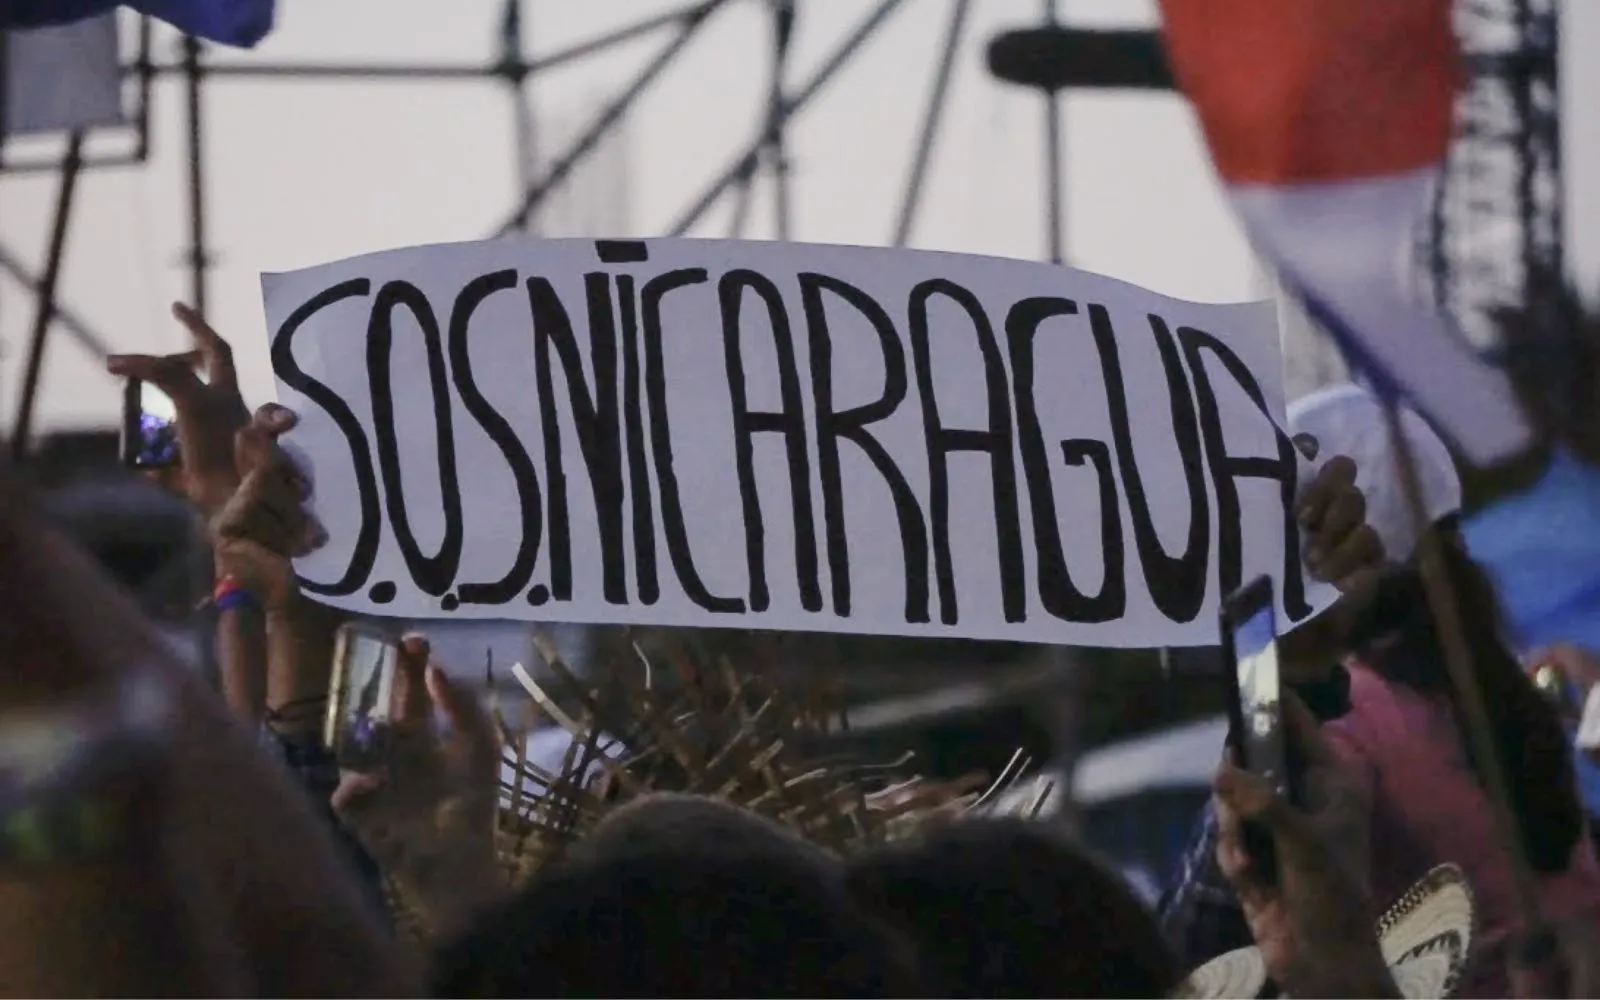 Mensaje con el lema "SOS Nicaragua", levantado en manos durante la Jornada Mundial de la Juventud (JMJ) Panamá 2019.?w=200&h=150